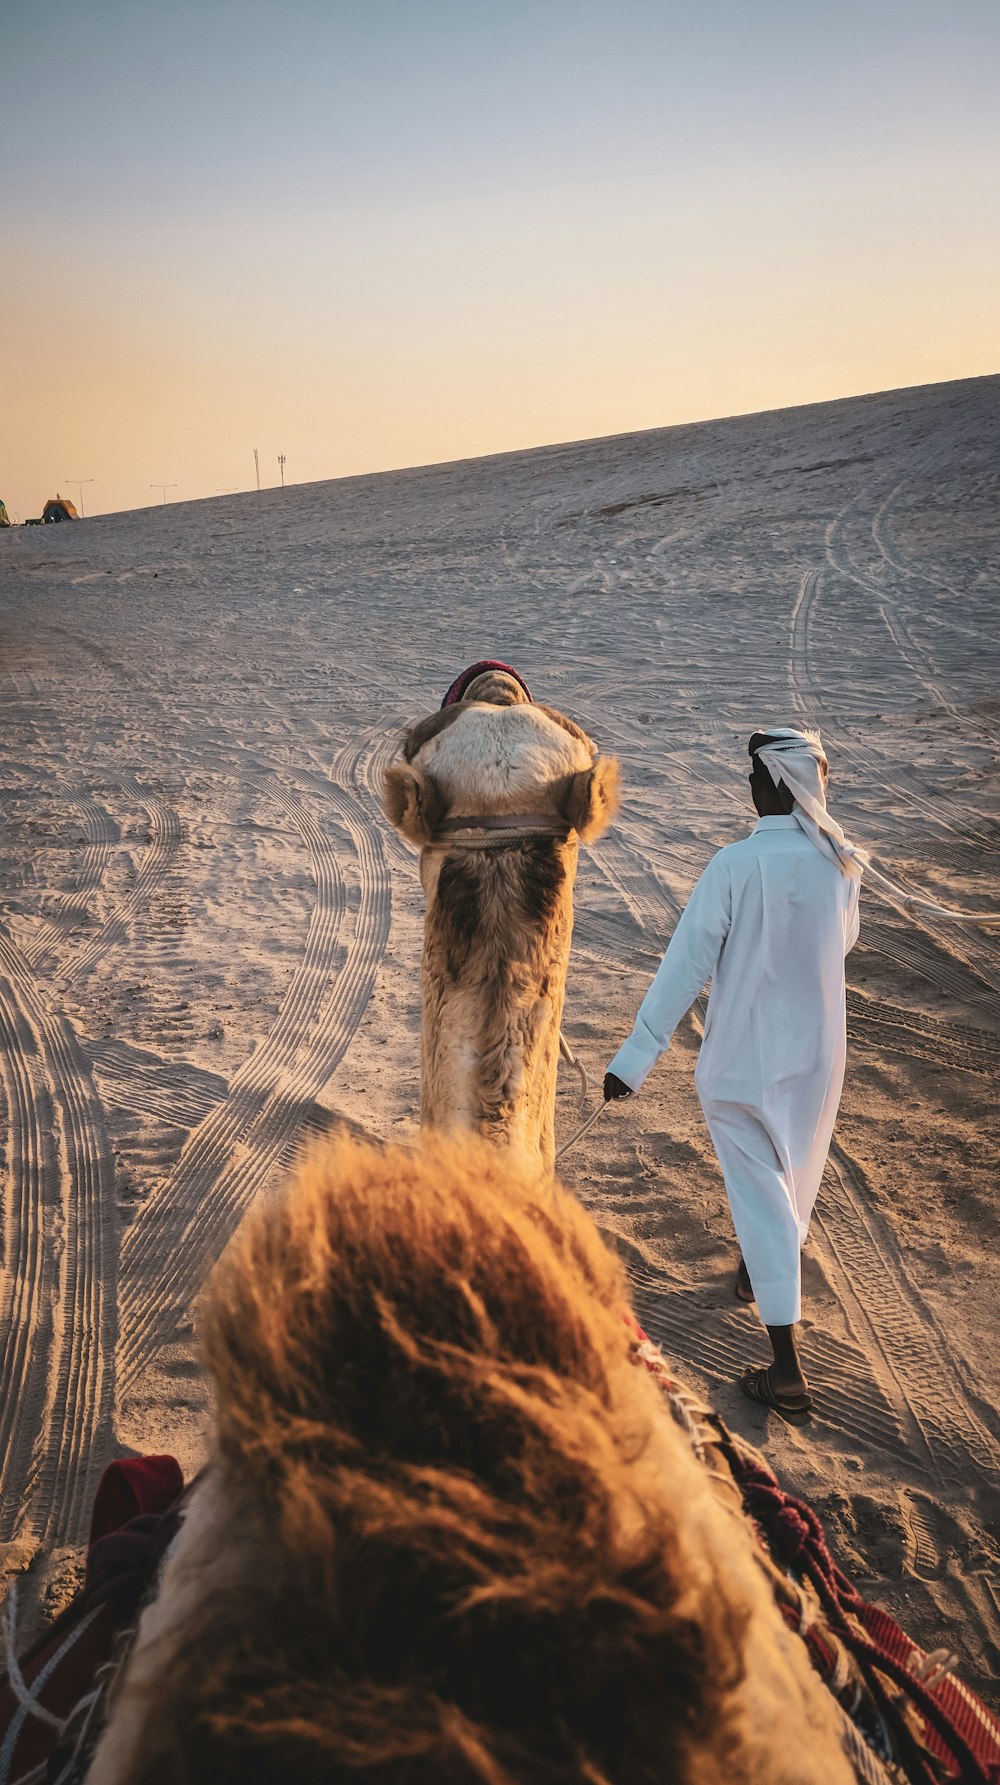 hombre con túnica blanca de pie junto a un camello marrón durante el día